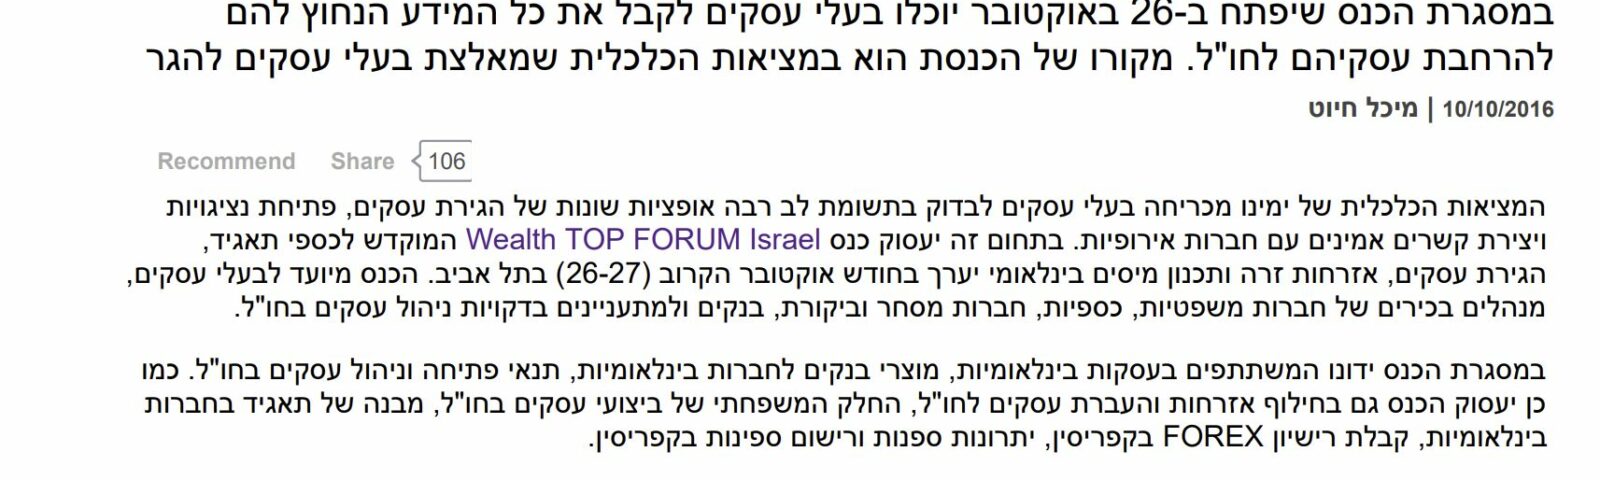 פורבס ישראל: הנחיית עו"ד דורון אפיק בכנס הבינלאומי Top Forum